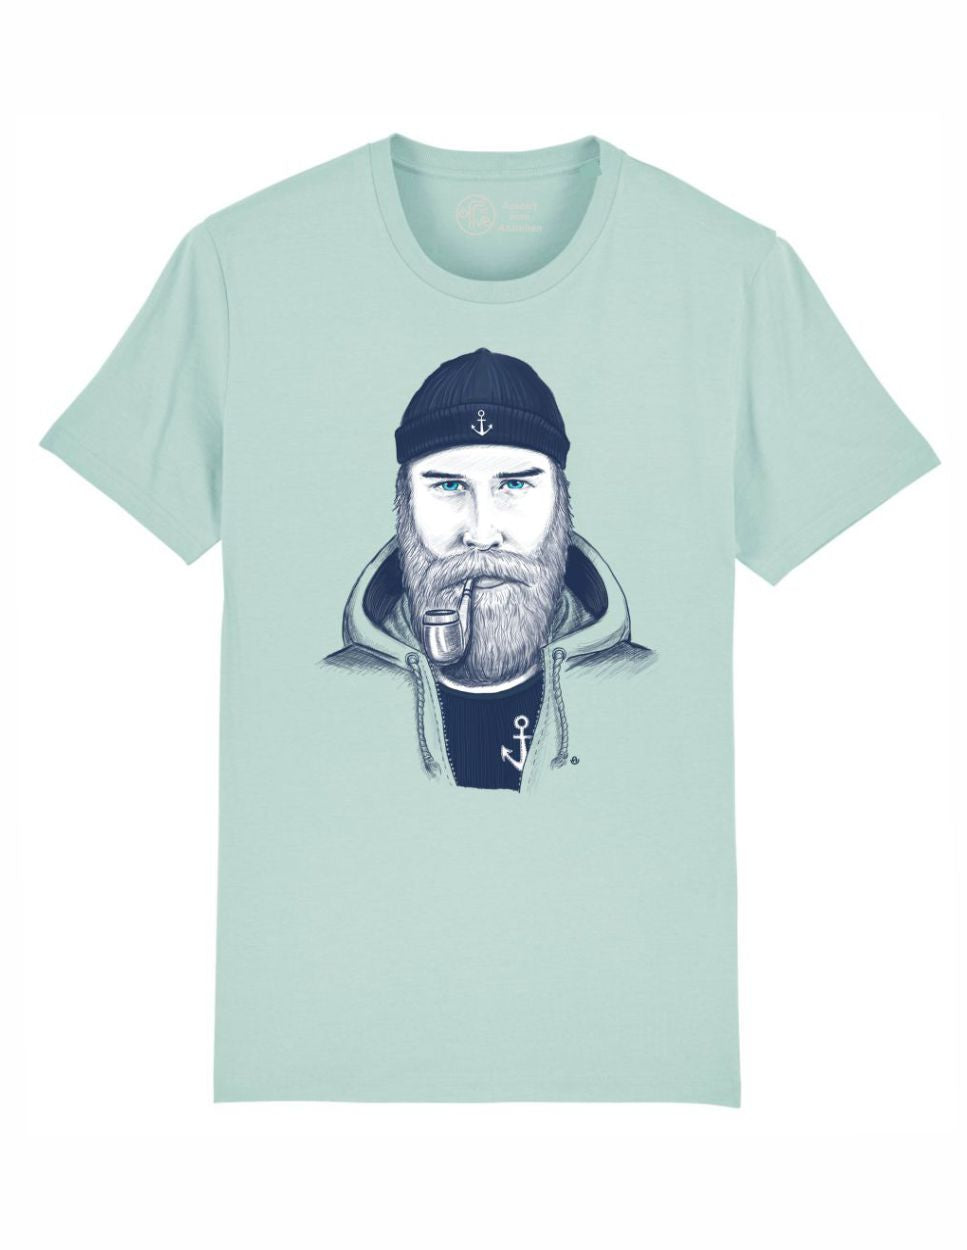 Seemann Herren T-Shirt mint. Cooles T Shirt für Männer Seemann Design. 100% Bio-Baumwolle